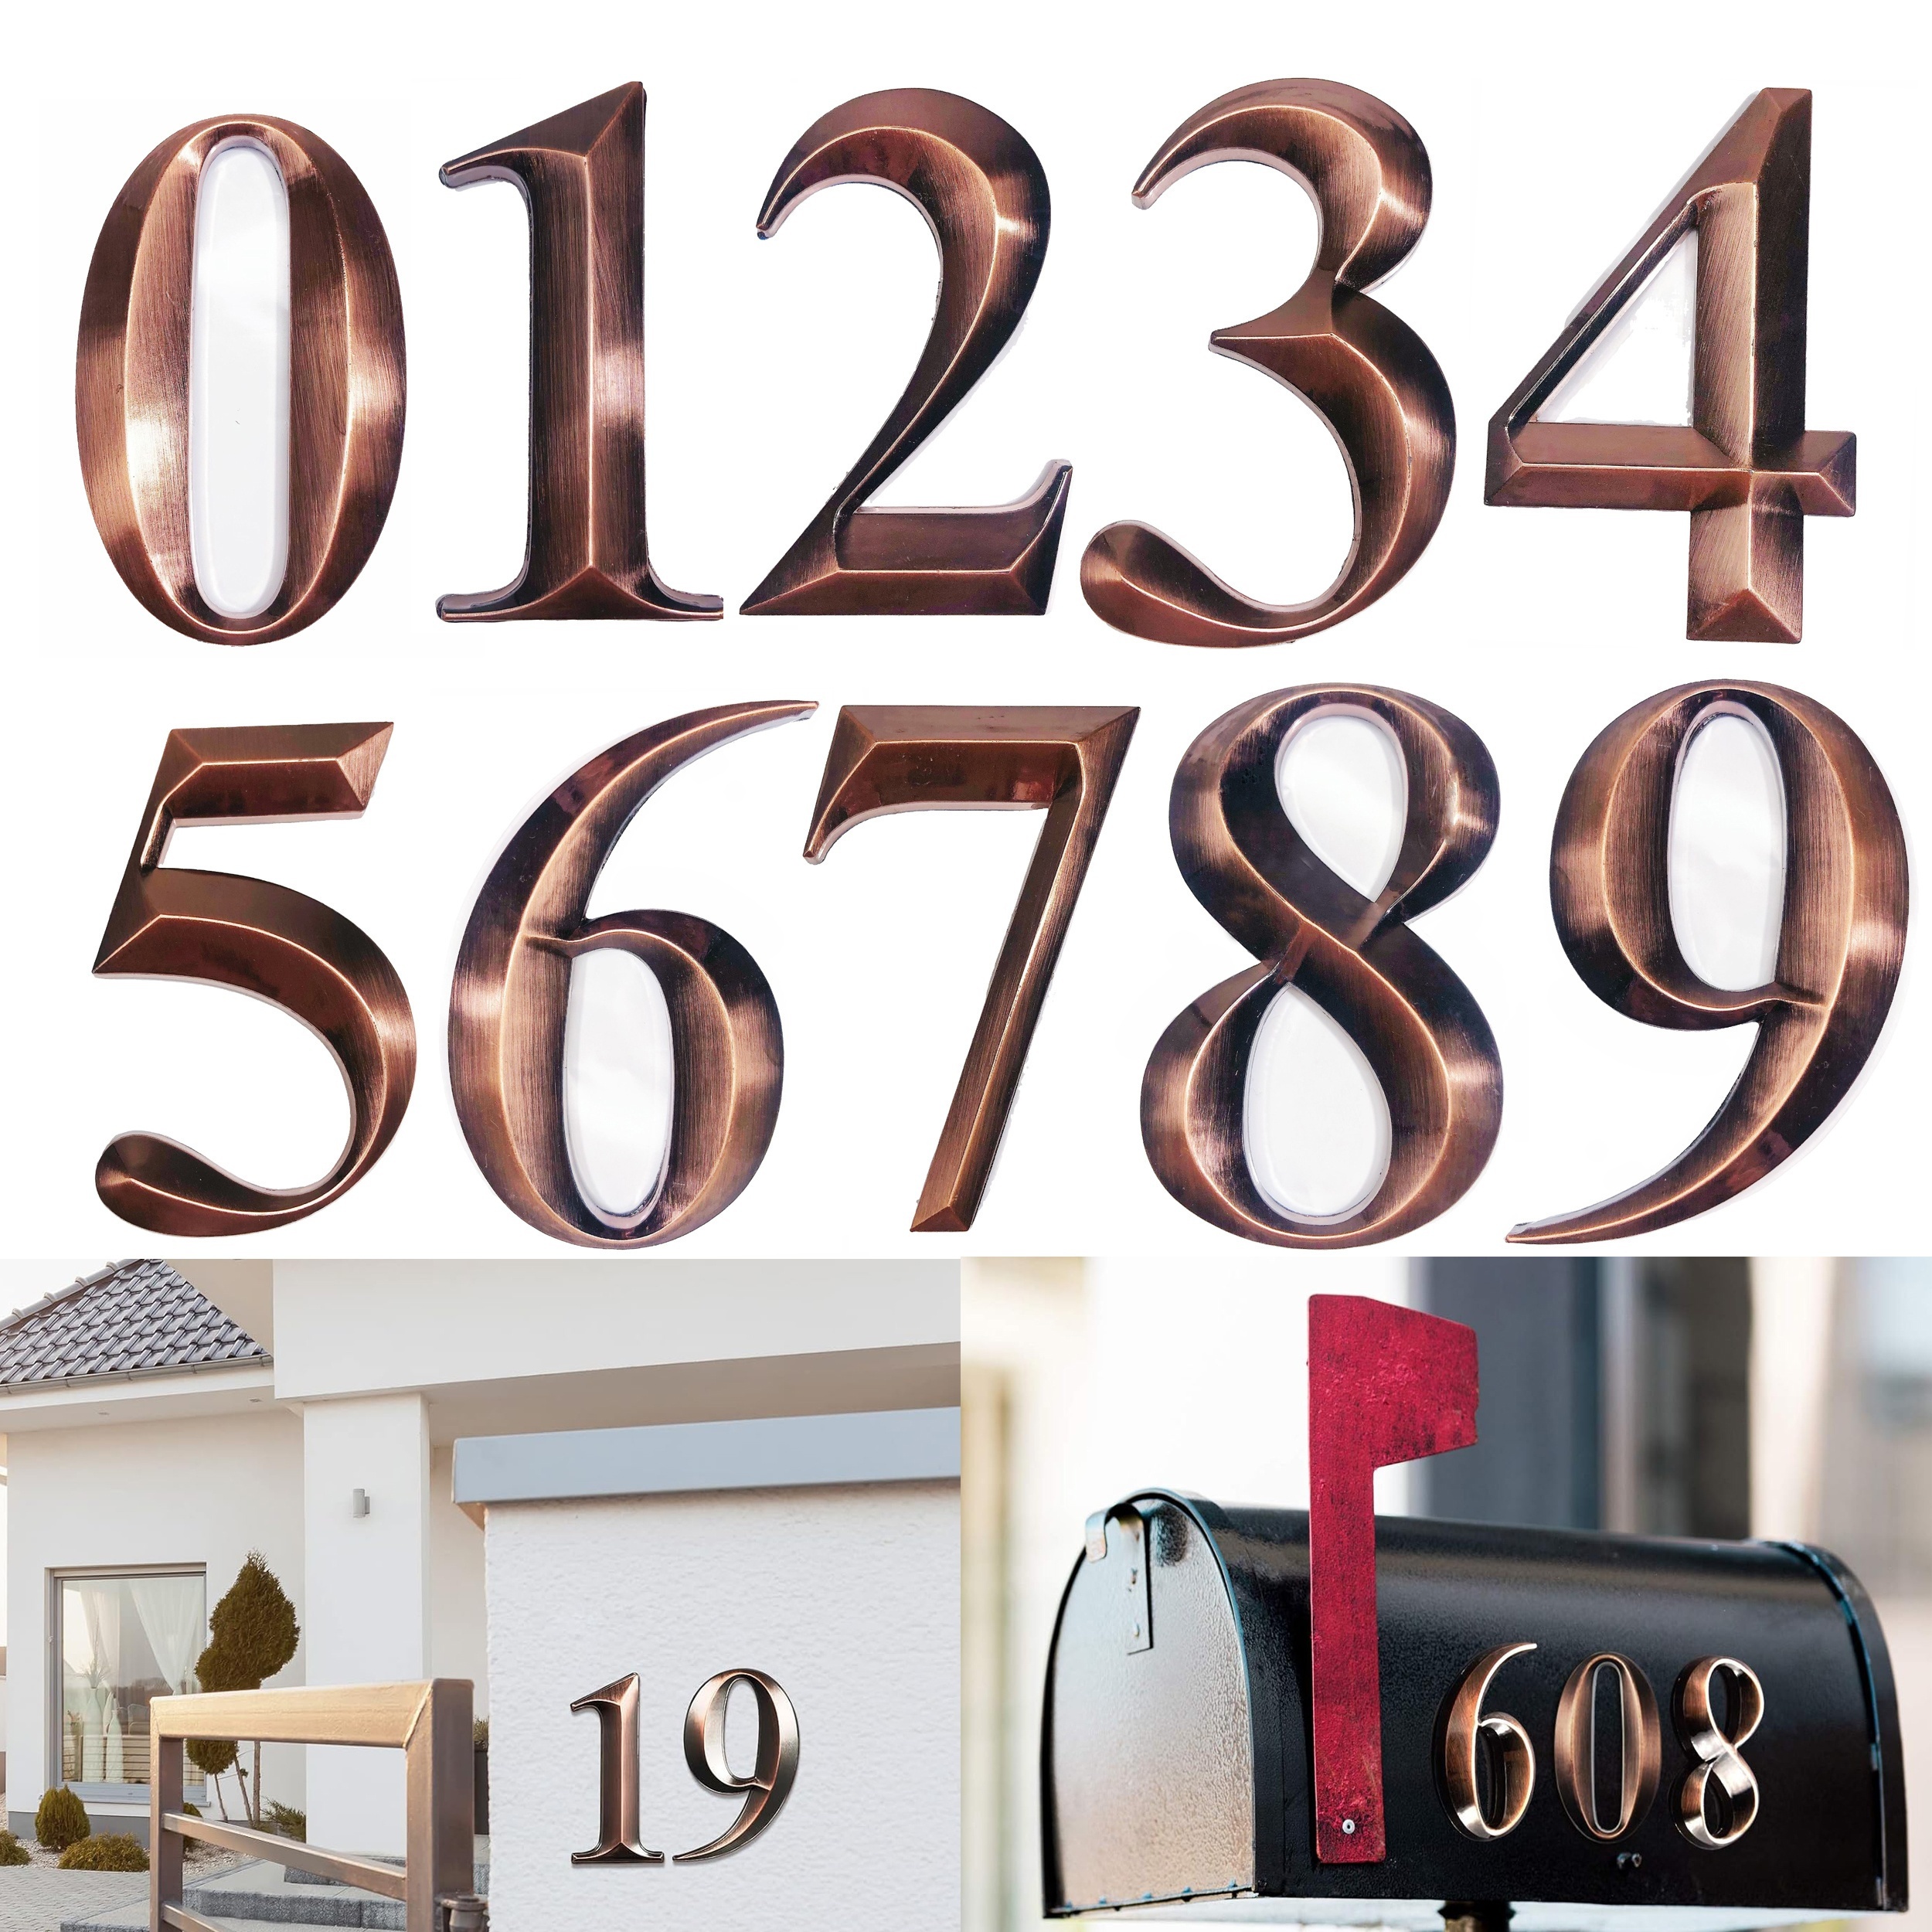 3 Pouces 3D Numéros de Boîte aux Lettres Numéros de Maison Auto-adhésifs  Numéros d'Adresse Étanches Autocollants de Numéro de Rue de Porte pour  Maison